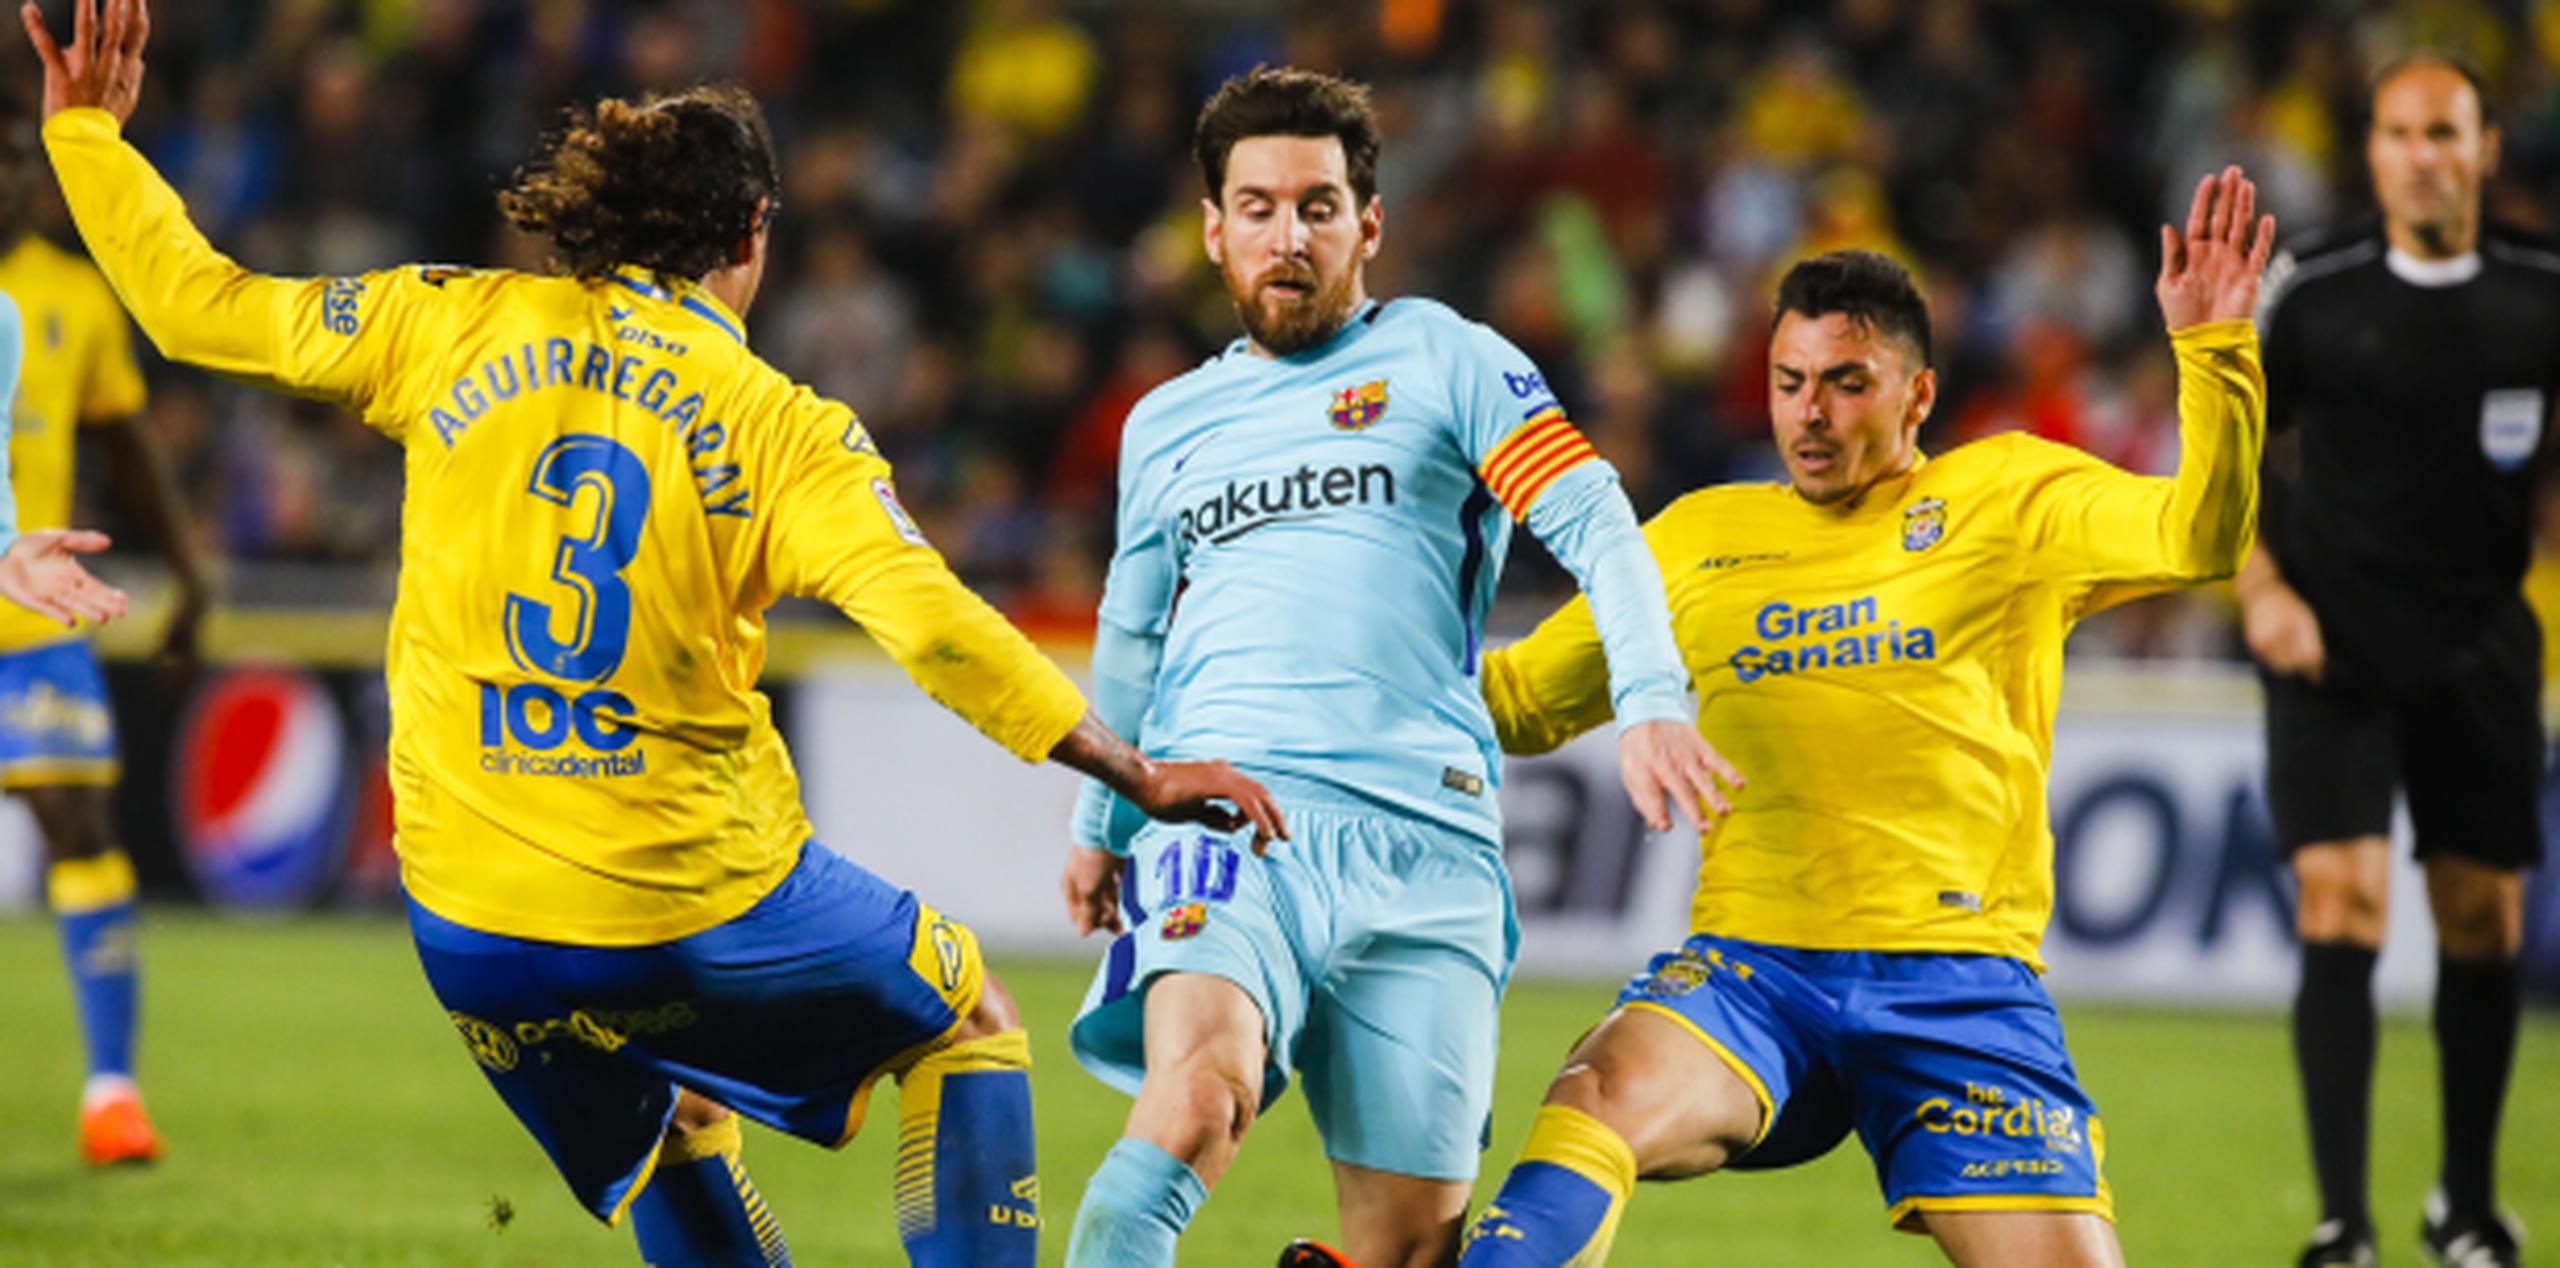 El astro de Barcelona Lionel Messi, al centro, se disputa el balón con los jugadores de Las Palmas Matías Aguirregaray, izquierda, y Ximo Navarro, en un partido de La Liga española el jueves, 1 de marzo del 2018. (AP Foto/Lucas de León)